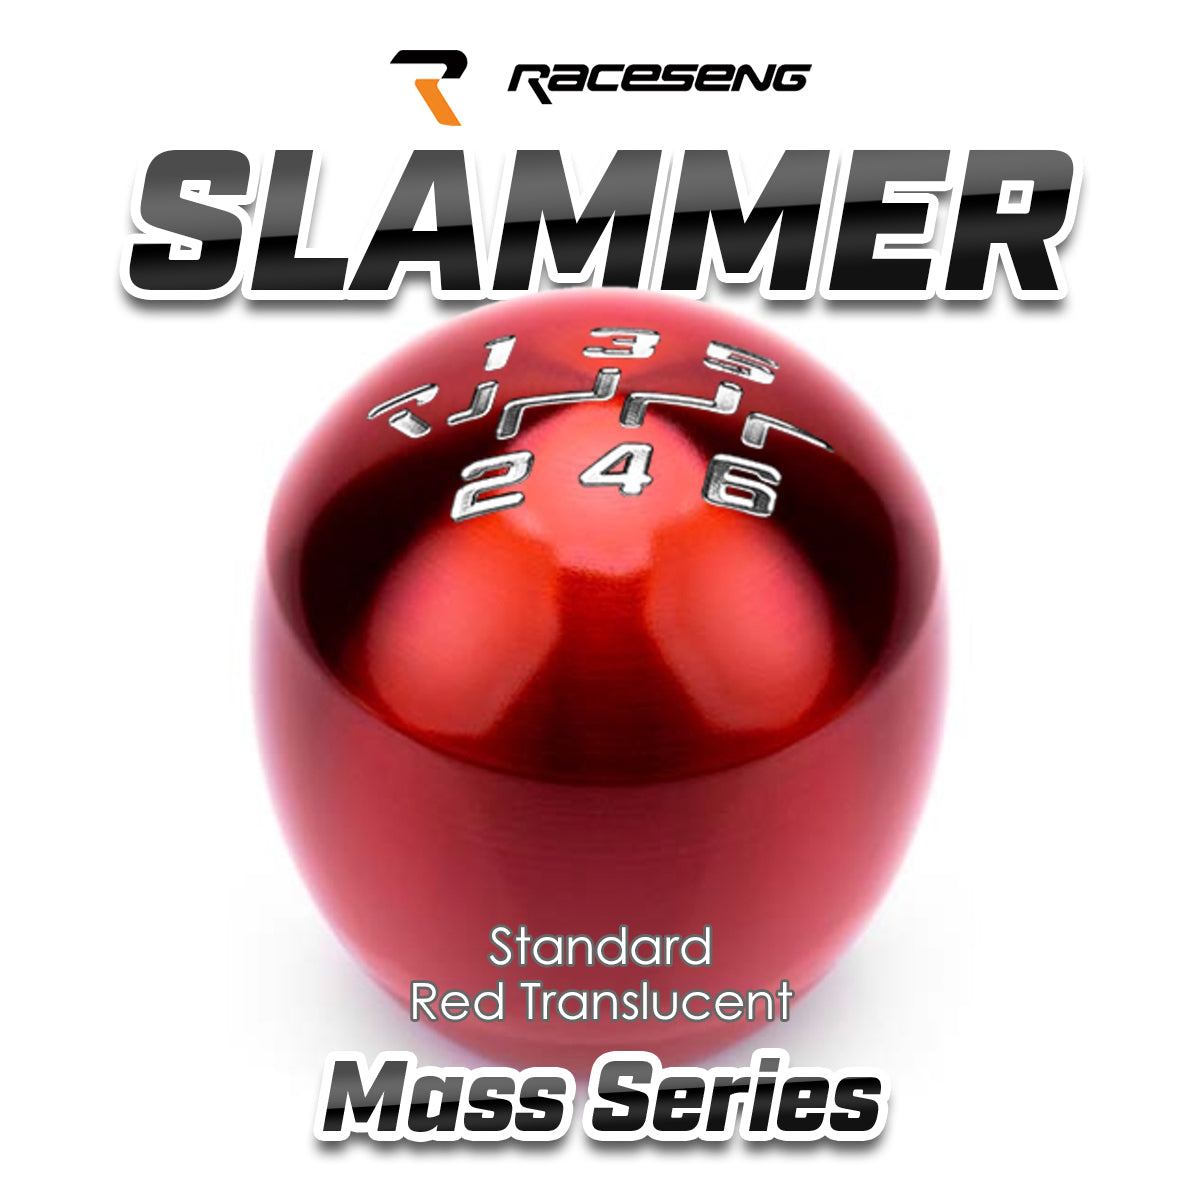 RACESENG レースセングシフトノブ MASSシリーズ SLAMMER スラマー：スタンダードカラー